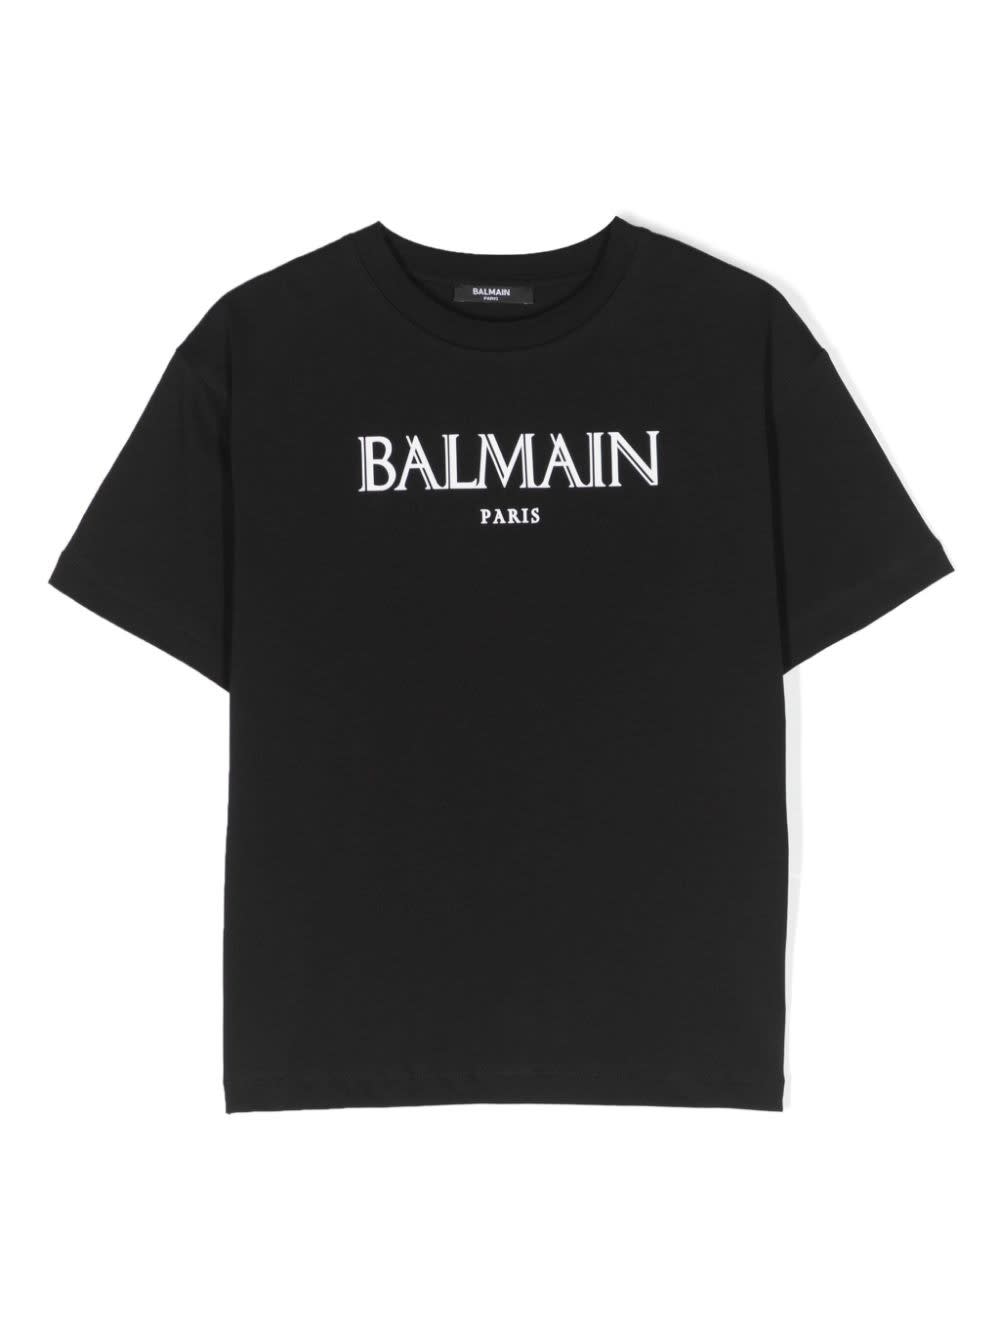 Balmain Kids' Printed T-shirt In Bc